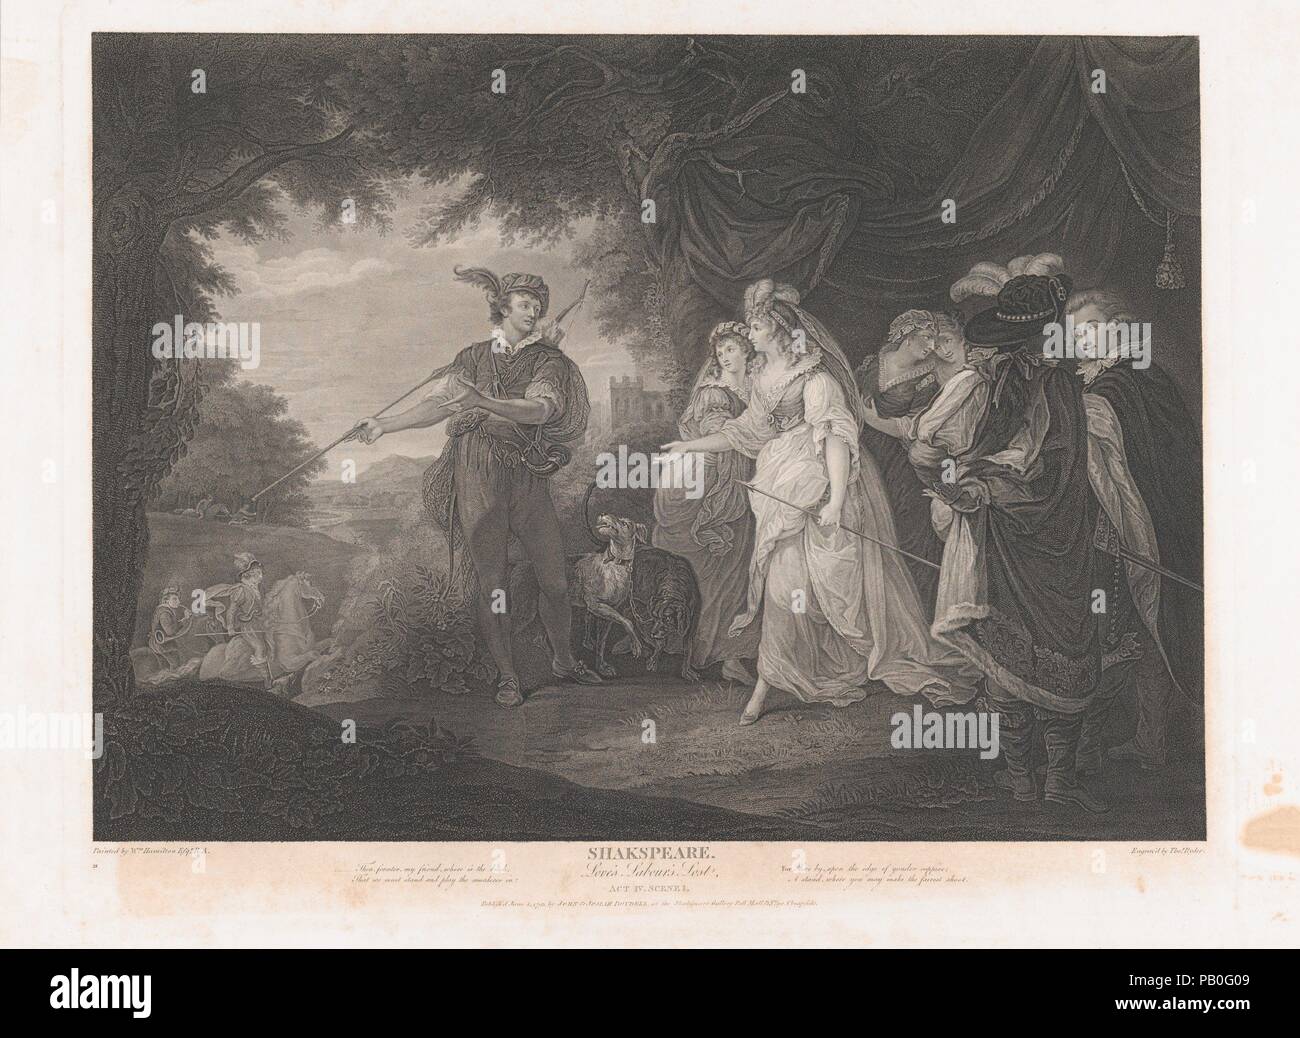 Die Prinzessin, Rosaline, etc. (Shakespeare, verlorene Liebesmüh, Akt 4, Szene 1). Artist: Nach William Hamilton (British, London 1751-1801 London). Abmessungen: Platte: 19 5/16 x 24 3/4 in. (49×62,8 cm) Blatt: 21 13/16 x 27 13/16-in. (55,4 × 70,7 cm). Engraver: Thomas Ryder ICH (British, 1746-1810). Herausgeber: John & Josiah Boydell (British, 1786-1804). Serie/Portfolio: Boydell Shakespeare's Galerie. Betrifft: William Shakespeare (Britisch, Stratford-upon-Avon 1564-1616 Stratford-upon-Avon). Datum: 1793. Museum: Metropolitan Museum of Art, New York, USA. Stockfoto